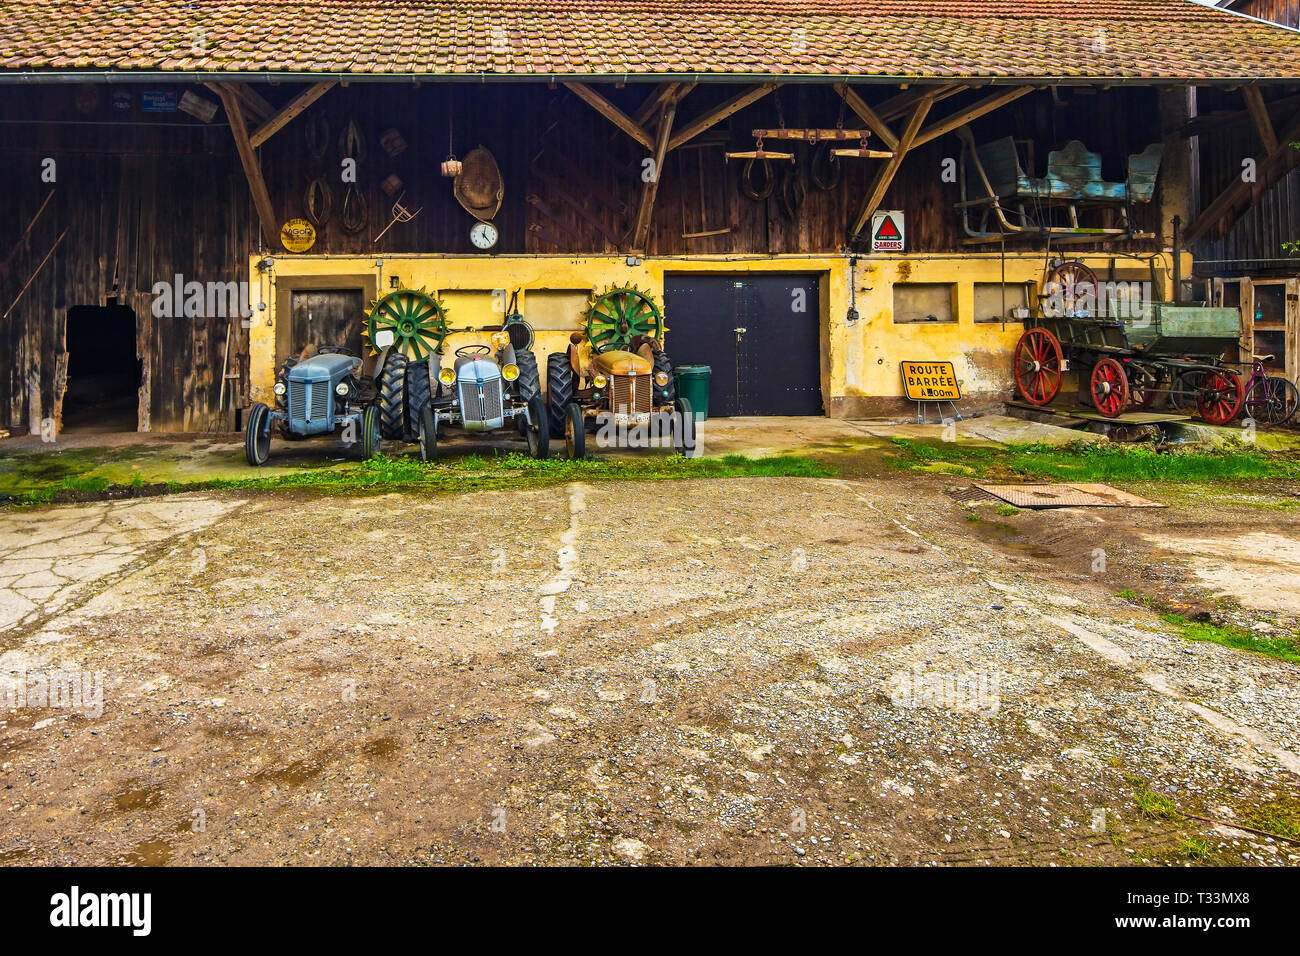 Alte landwirtschaftliche Traktoren im Hinterhof der Bauern Haus, Elsass, Frankreich. Stockfoto